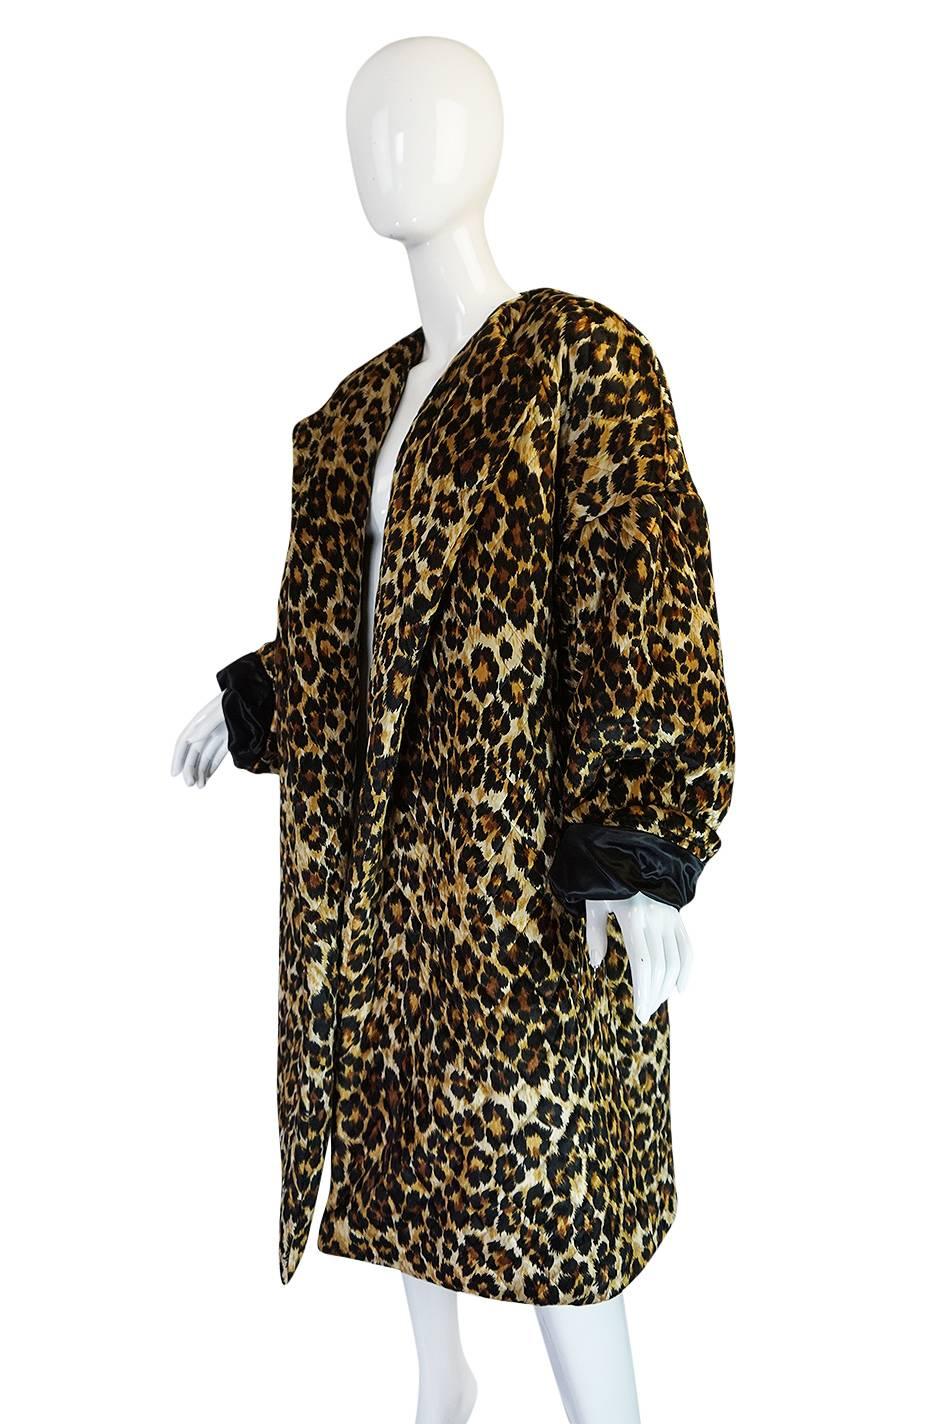 Women's 1980s Patrick Kelly Leopard Print Sleeping Blanket Coat